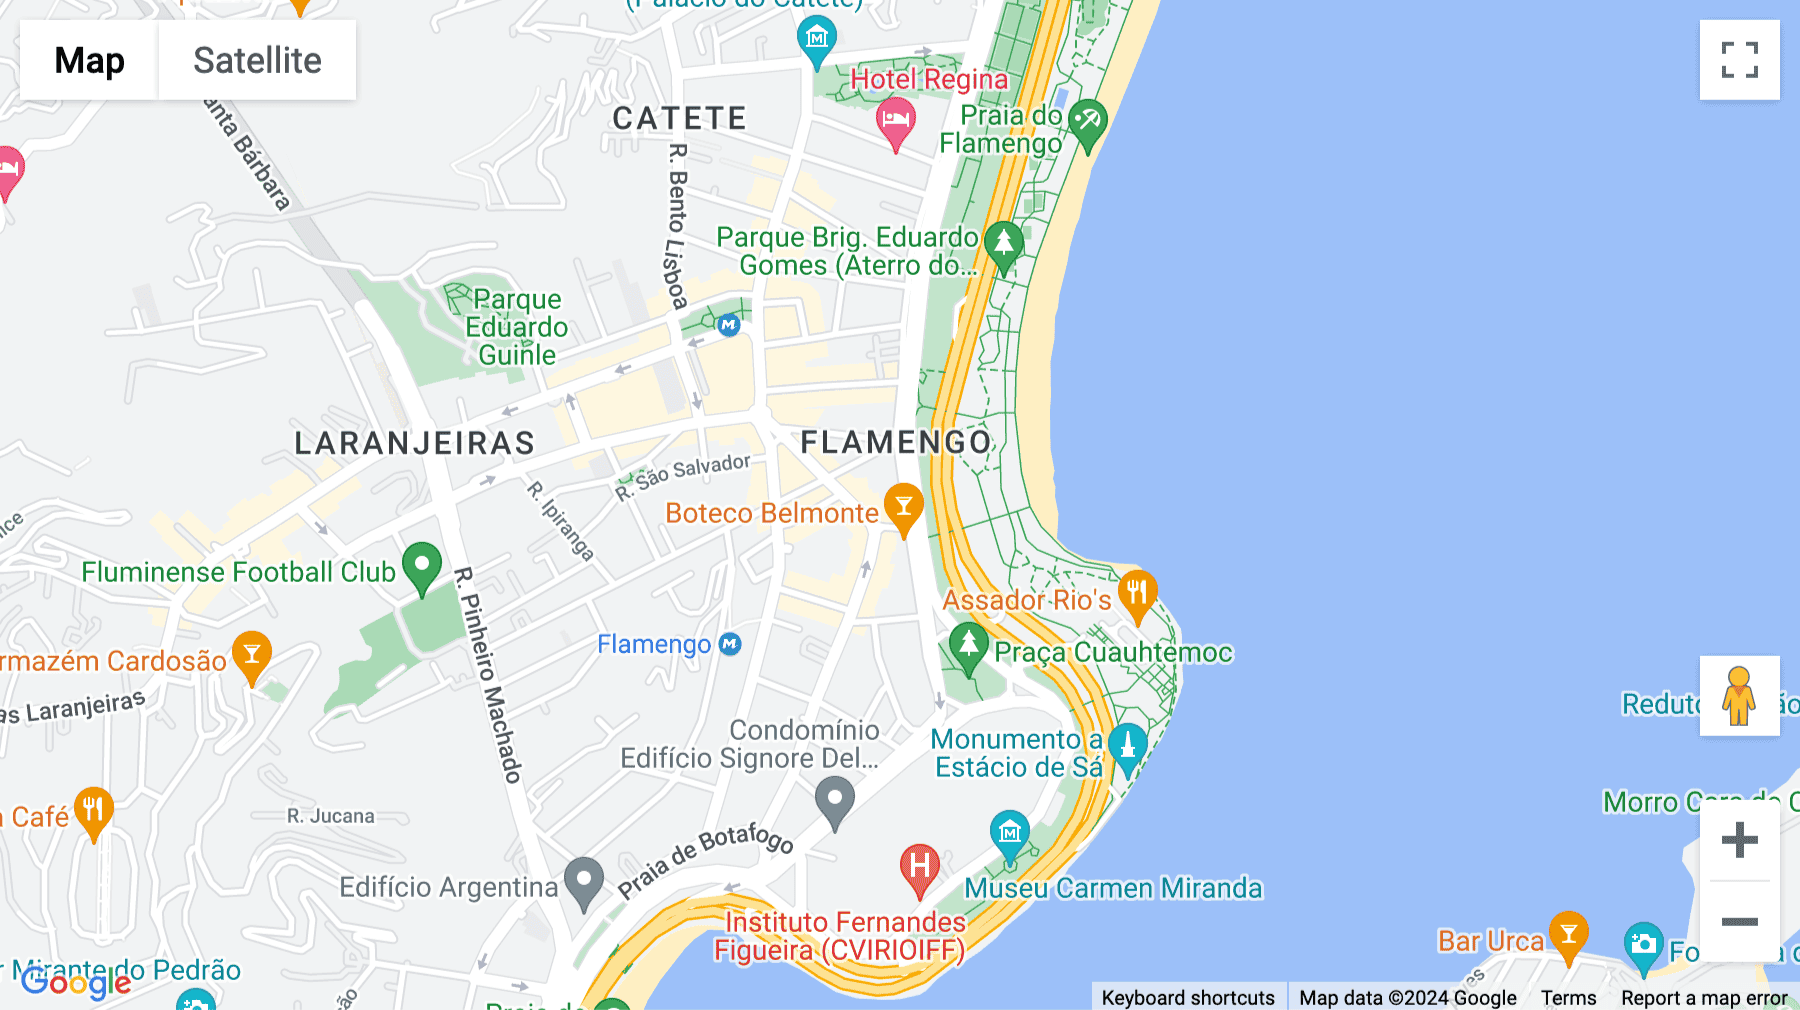 Click for interative map of Praia do Flamengo, 278, 4th floor, Flamengo Beach, Rio de Janeiro, RJ, Brazil, Rio de Janeiro